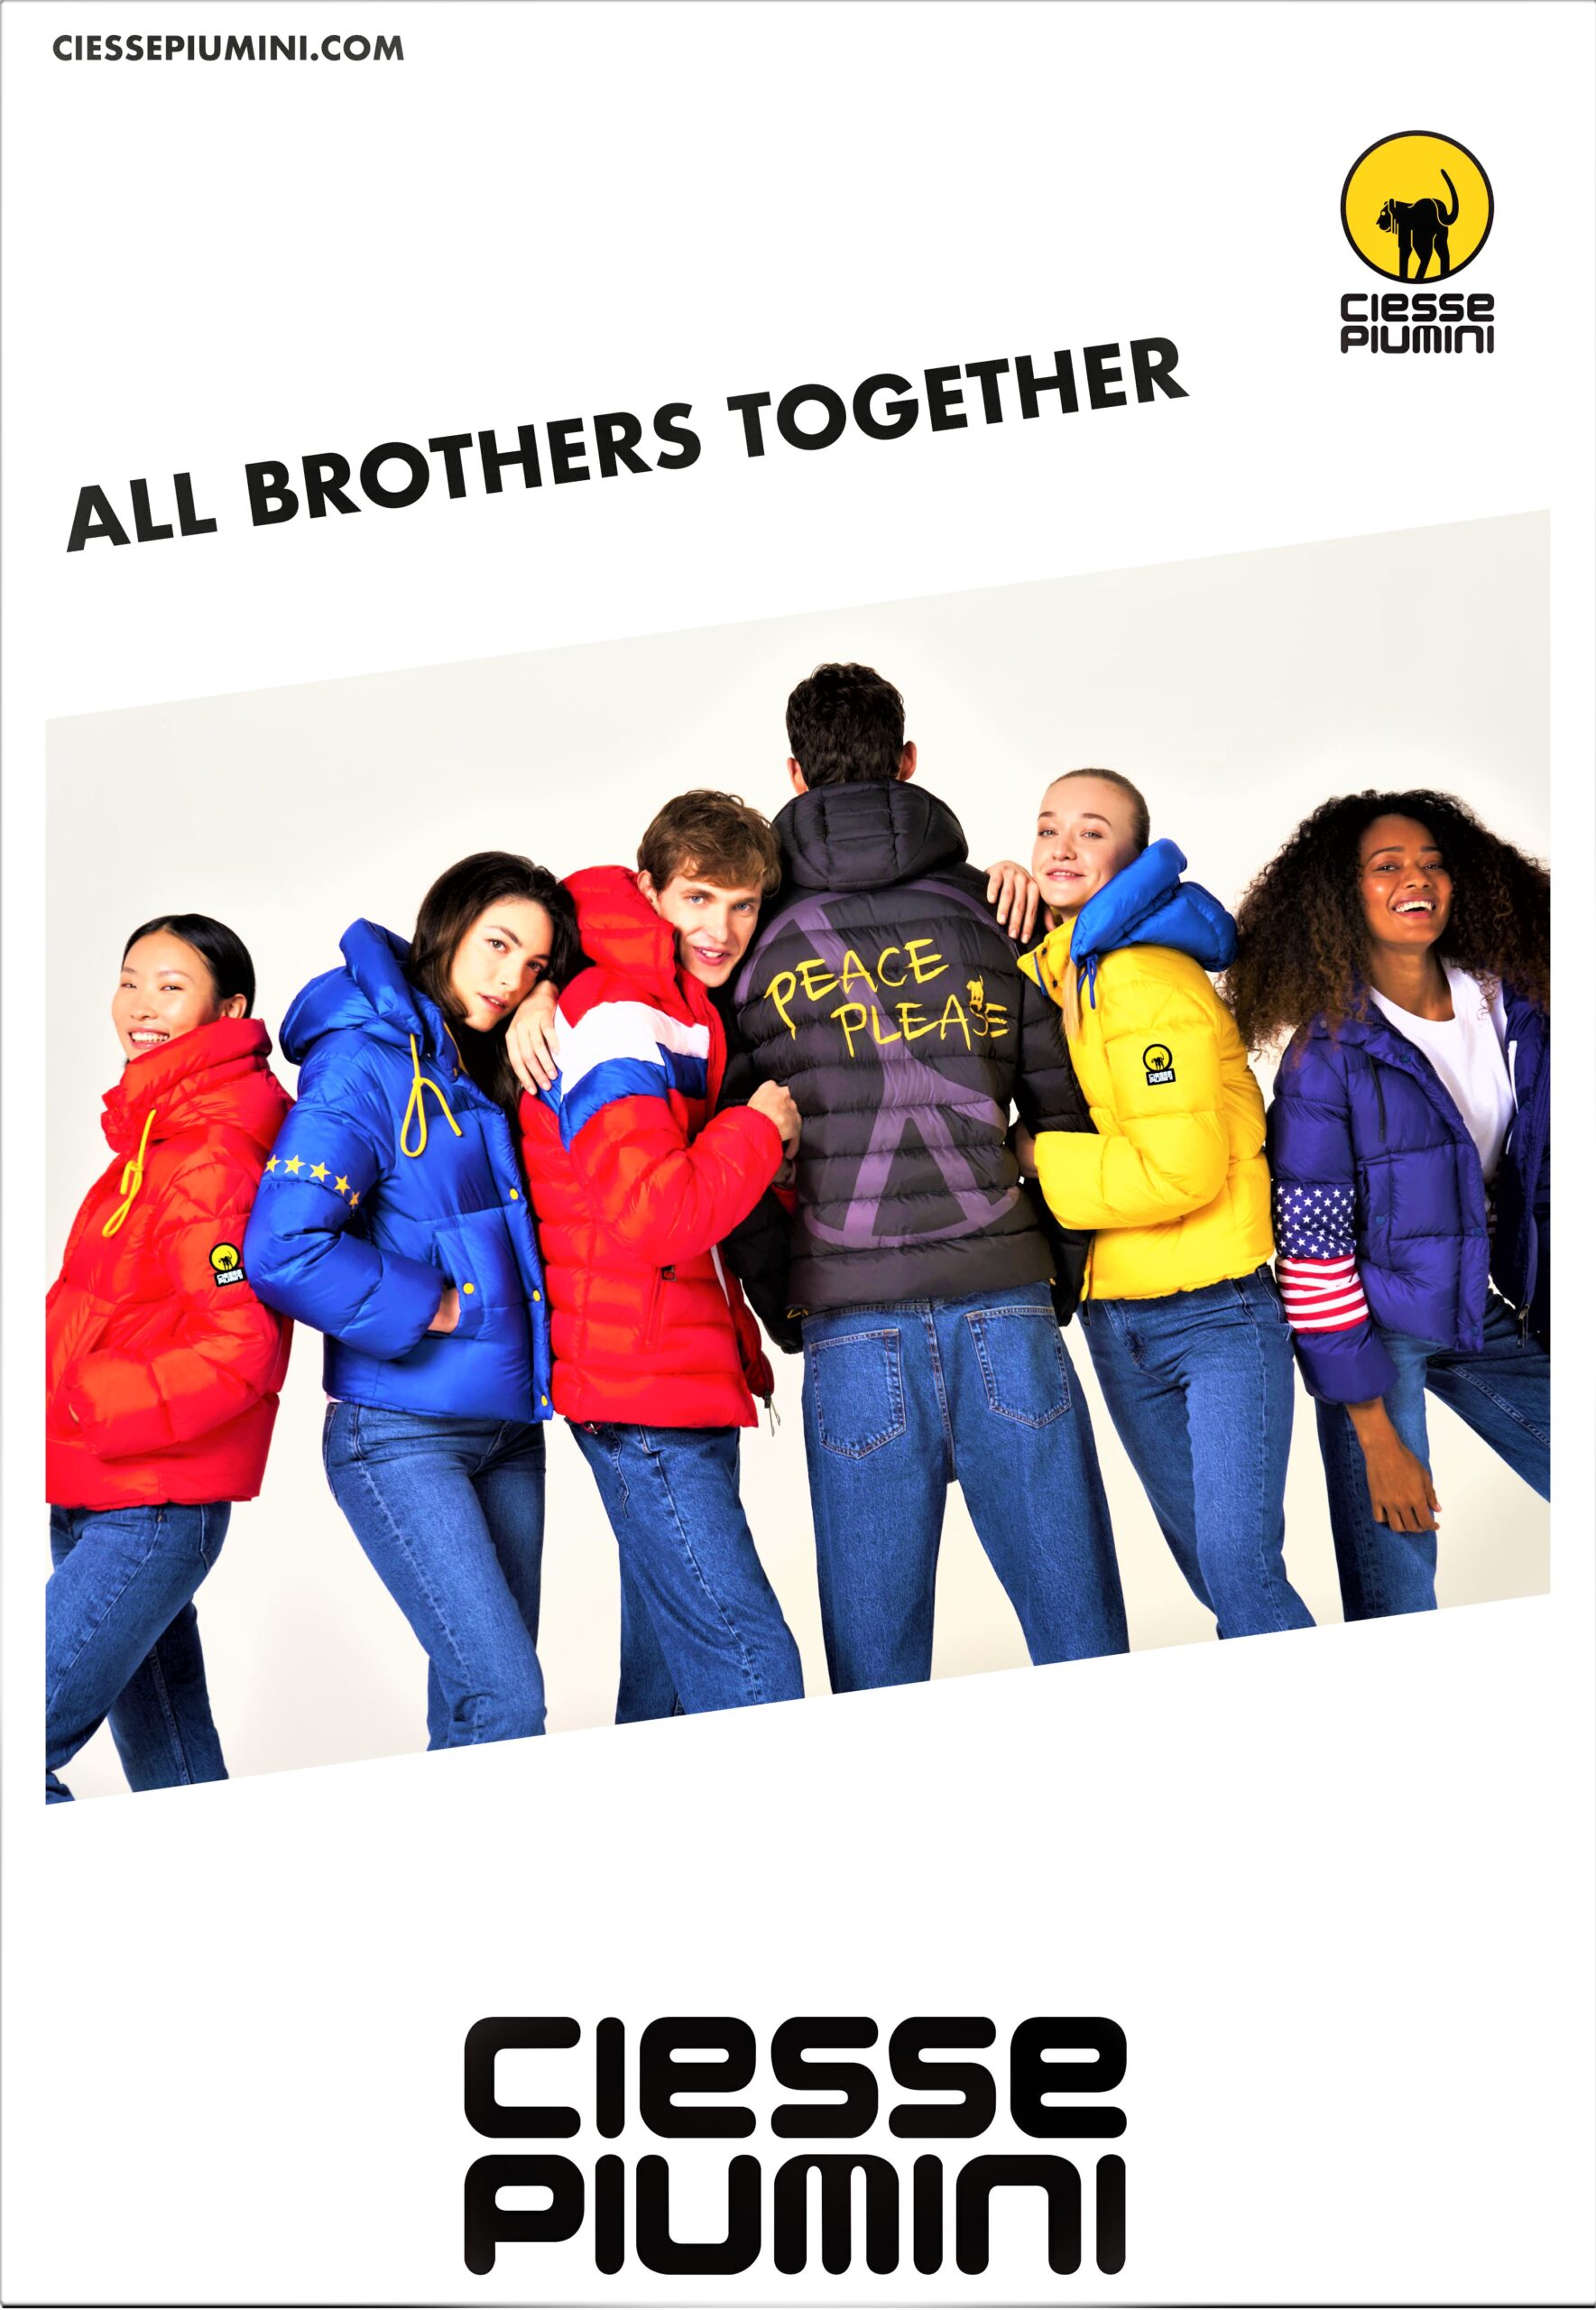 Ciesse Piumini lancia un messaggio di fratellanza universale attraverso il progetto “All Brothers Together”